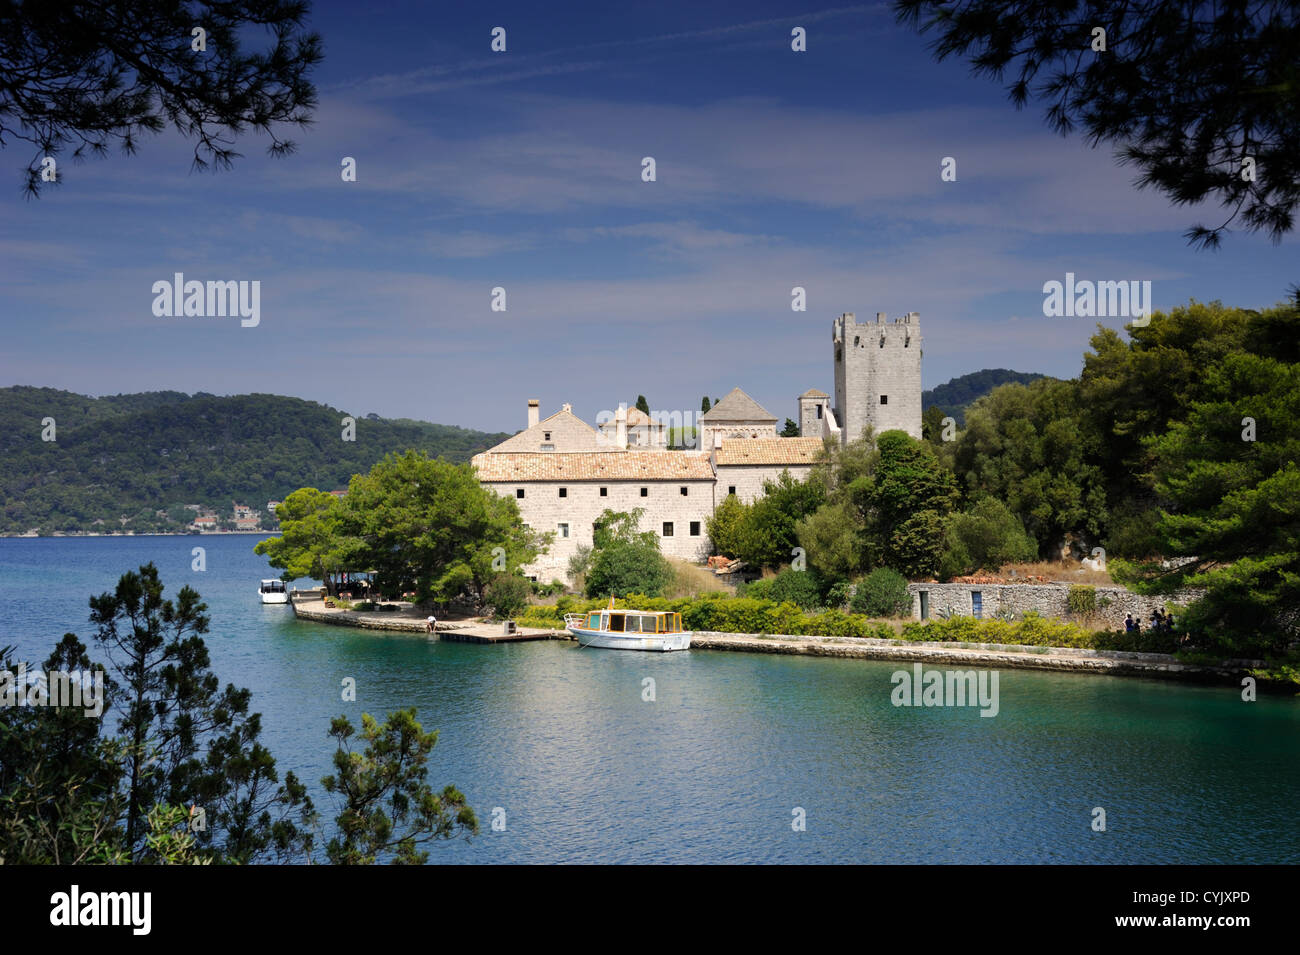 Croazia, Dalmazia, isola di Meleda, monastero benedettino Foto Stock